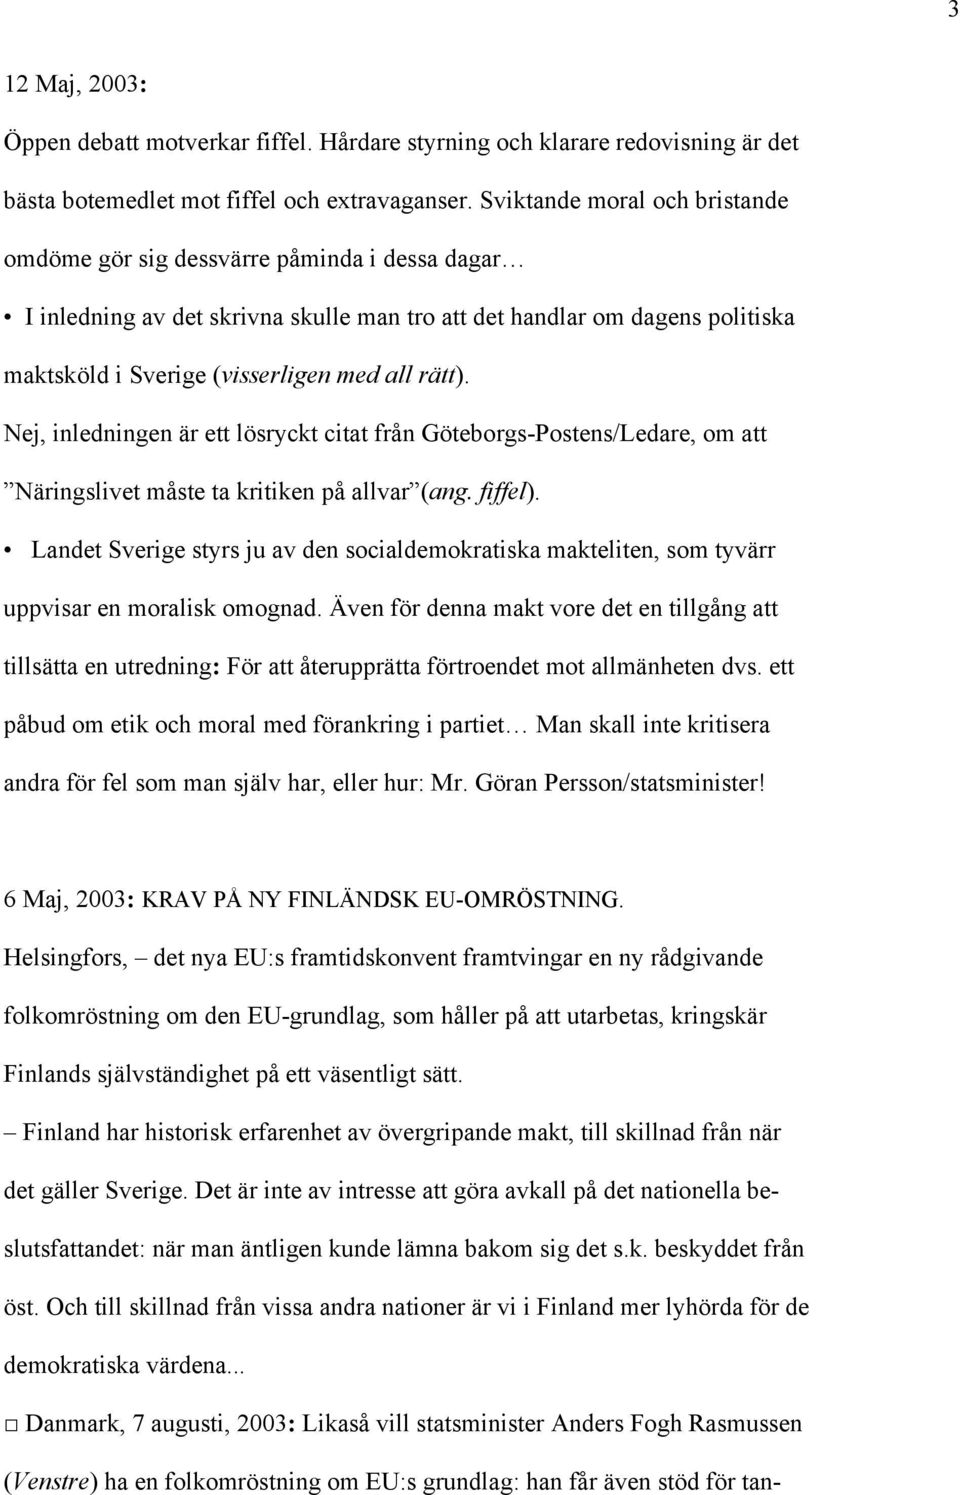 rätt). Nej, inledningen är ett lösryckt citat från Göteborgs-Postens/Ledare, om att Näringslivet måste ta kritiken på allvar (ang. fiffel).